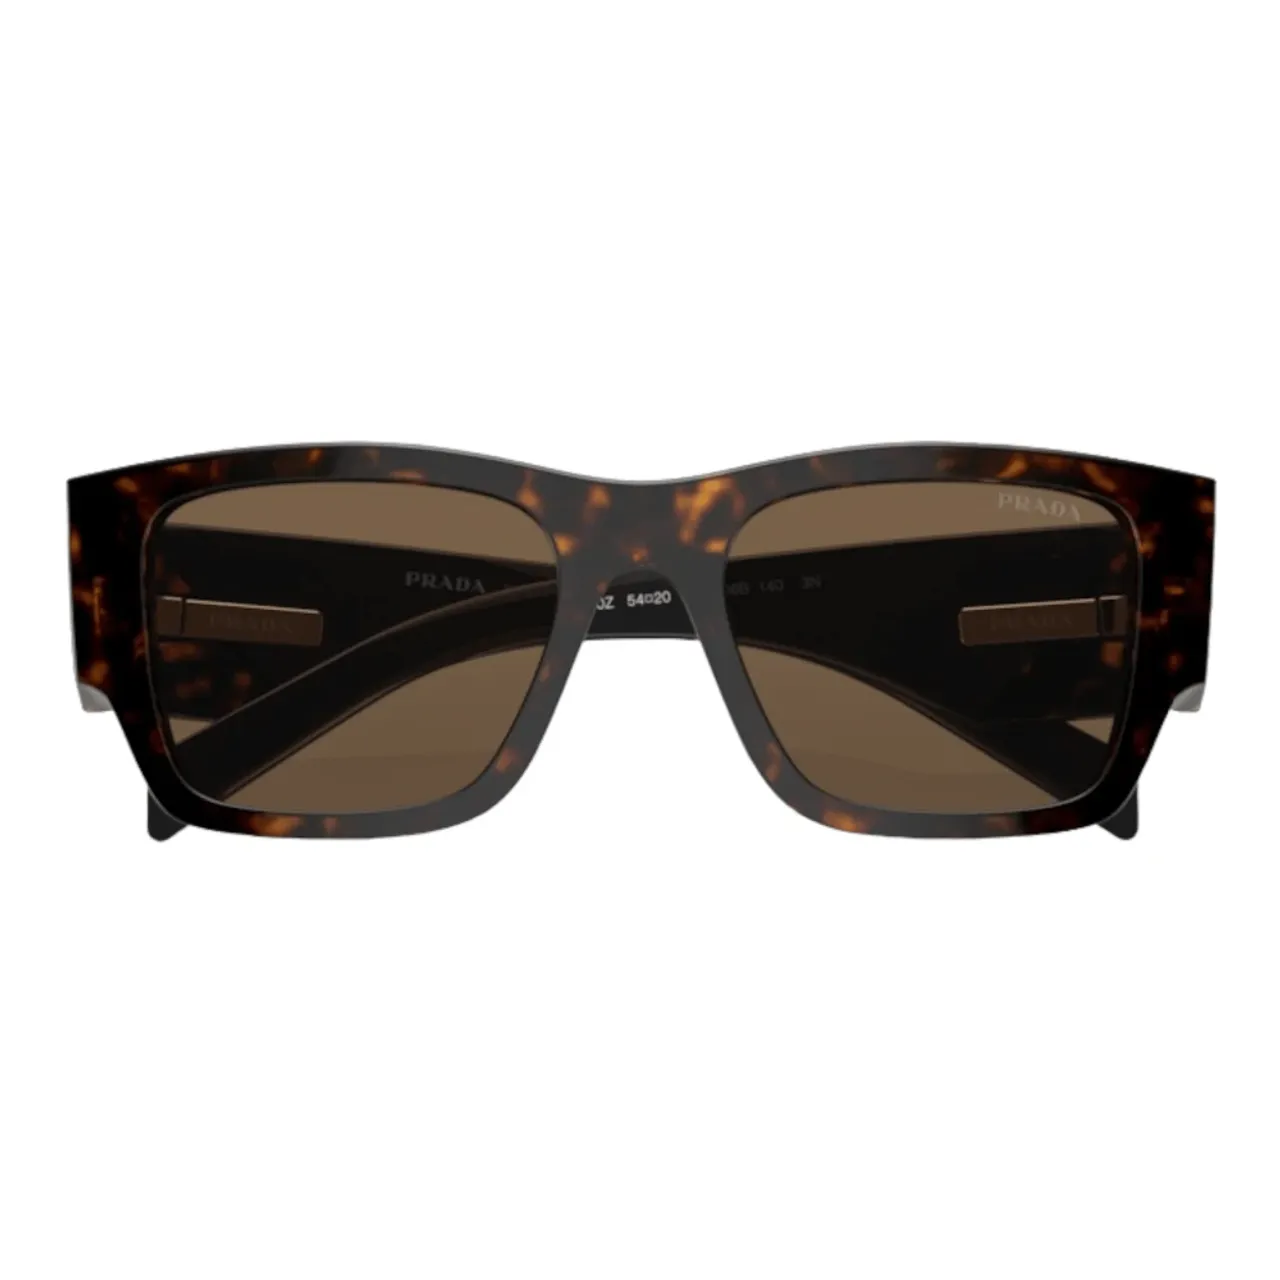 Stylische Sonnenbrille für Männer Prada